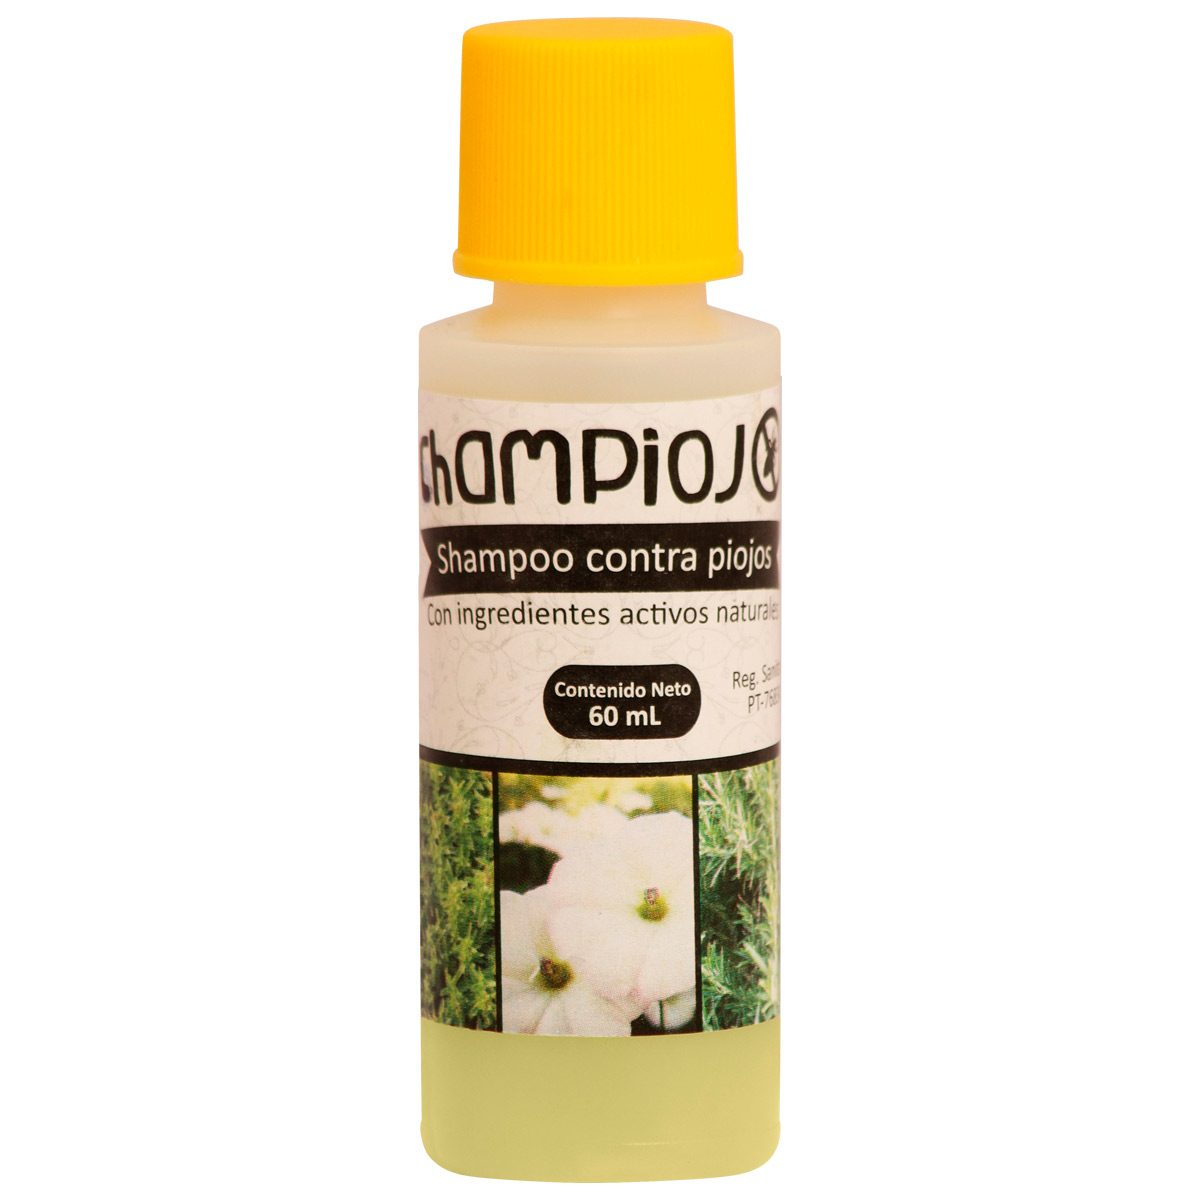 Shampoo champiojo shampiojo de 60ml que combate los piojos y liendres